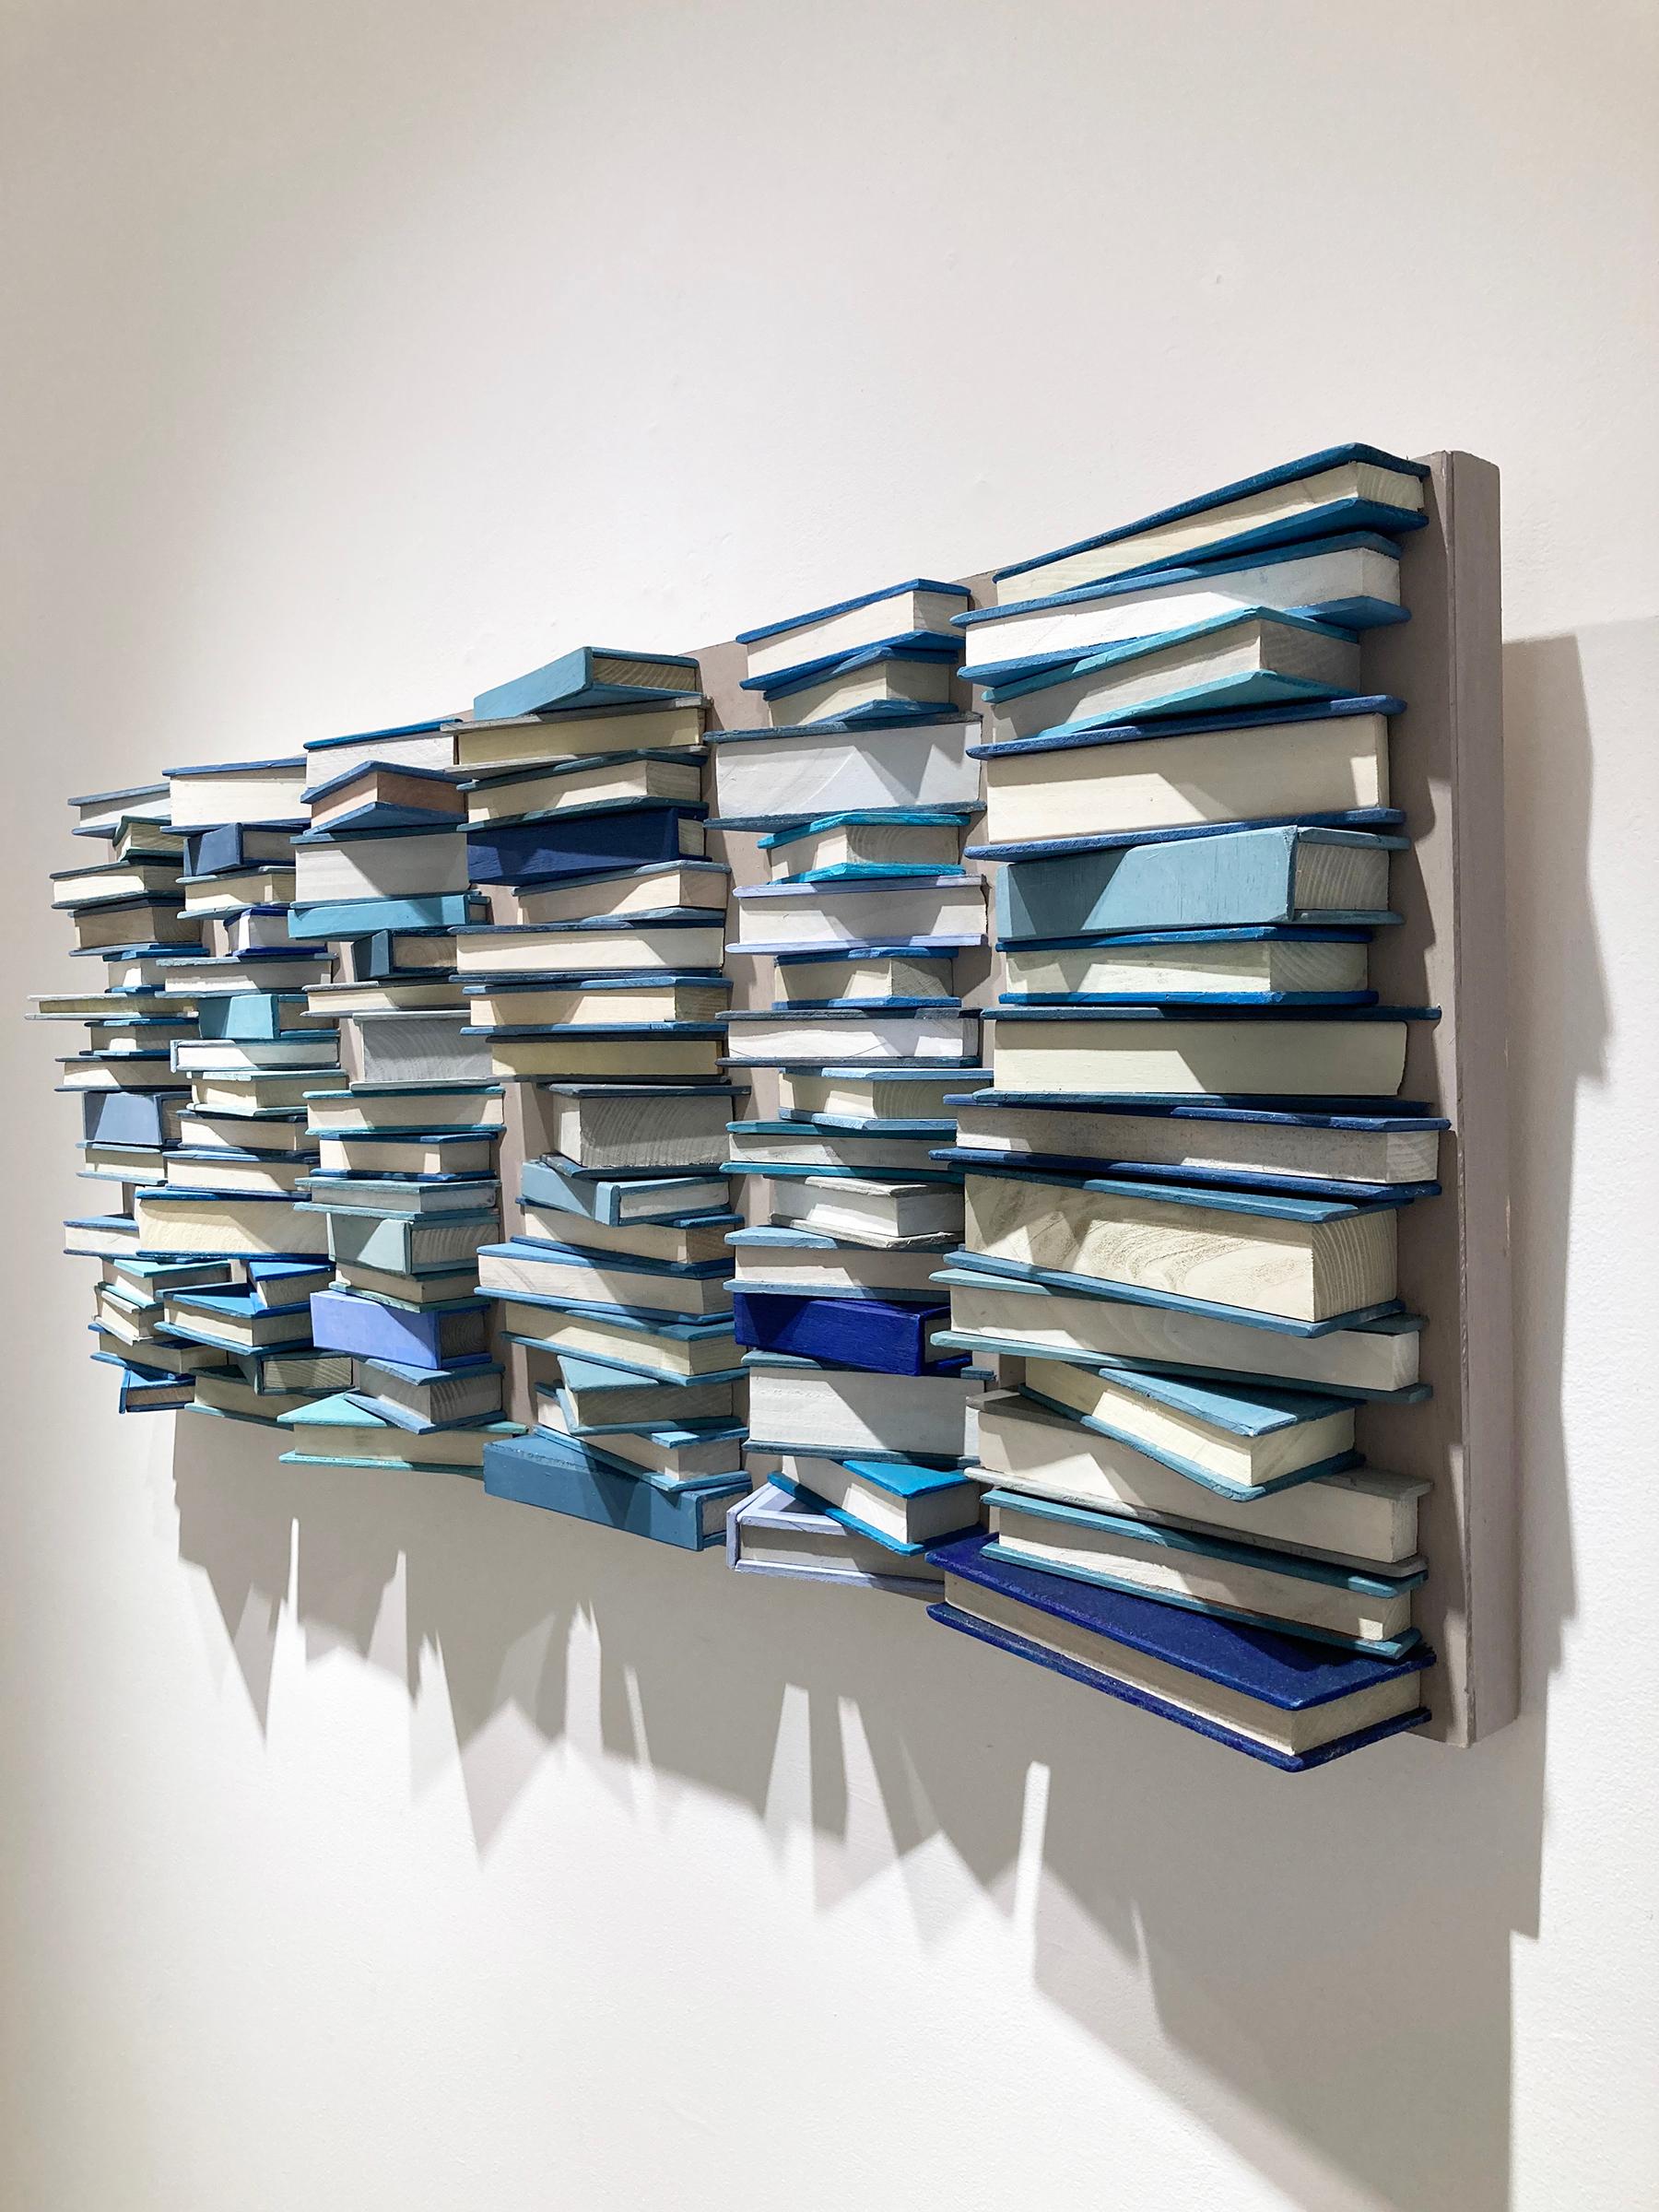 Blaue Bücher: Abstrakte geometrische 3D-Holz-Wandskulptur in Blau, Grau, Weiß – Painting von Stephen Walling